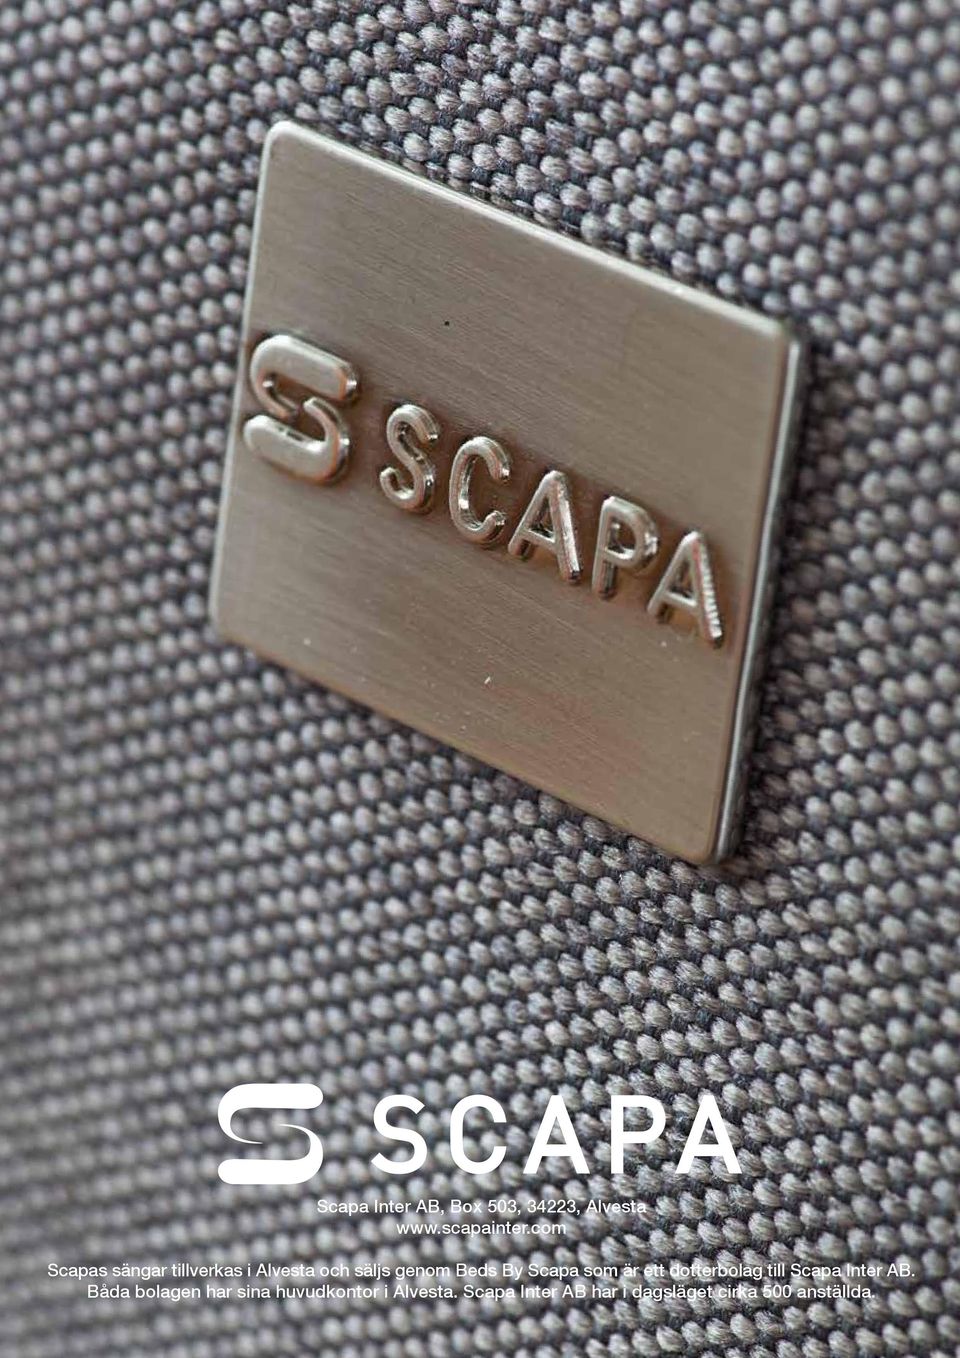 Scapa som är ett dotterbolag till Scapa Inter AB.